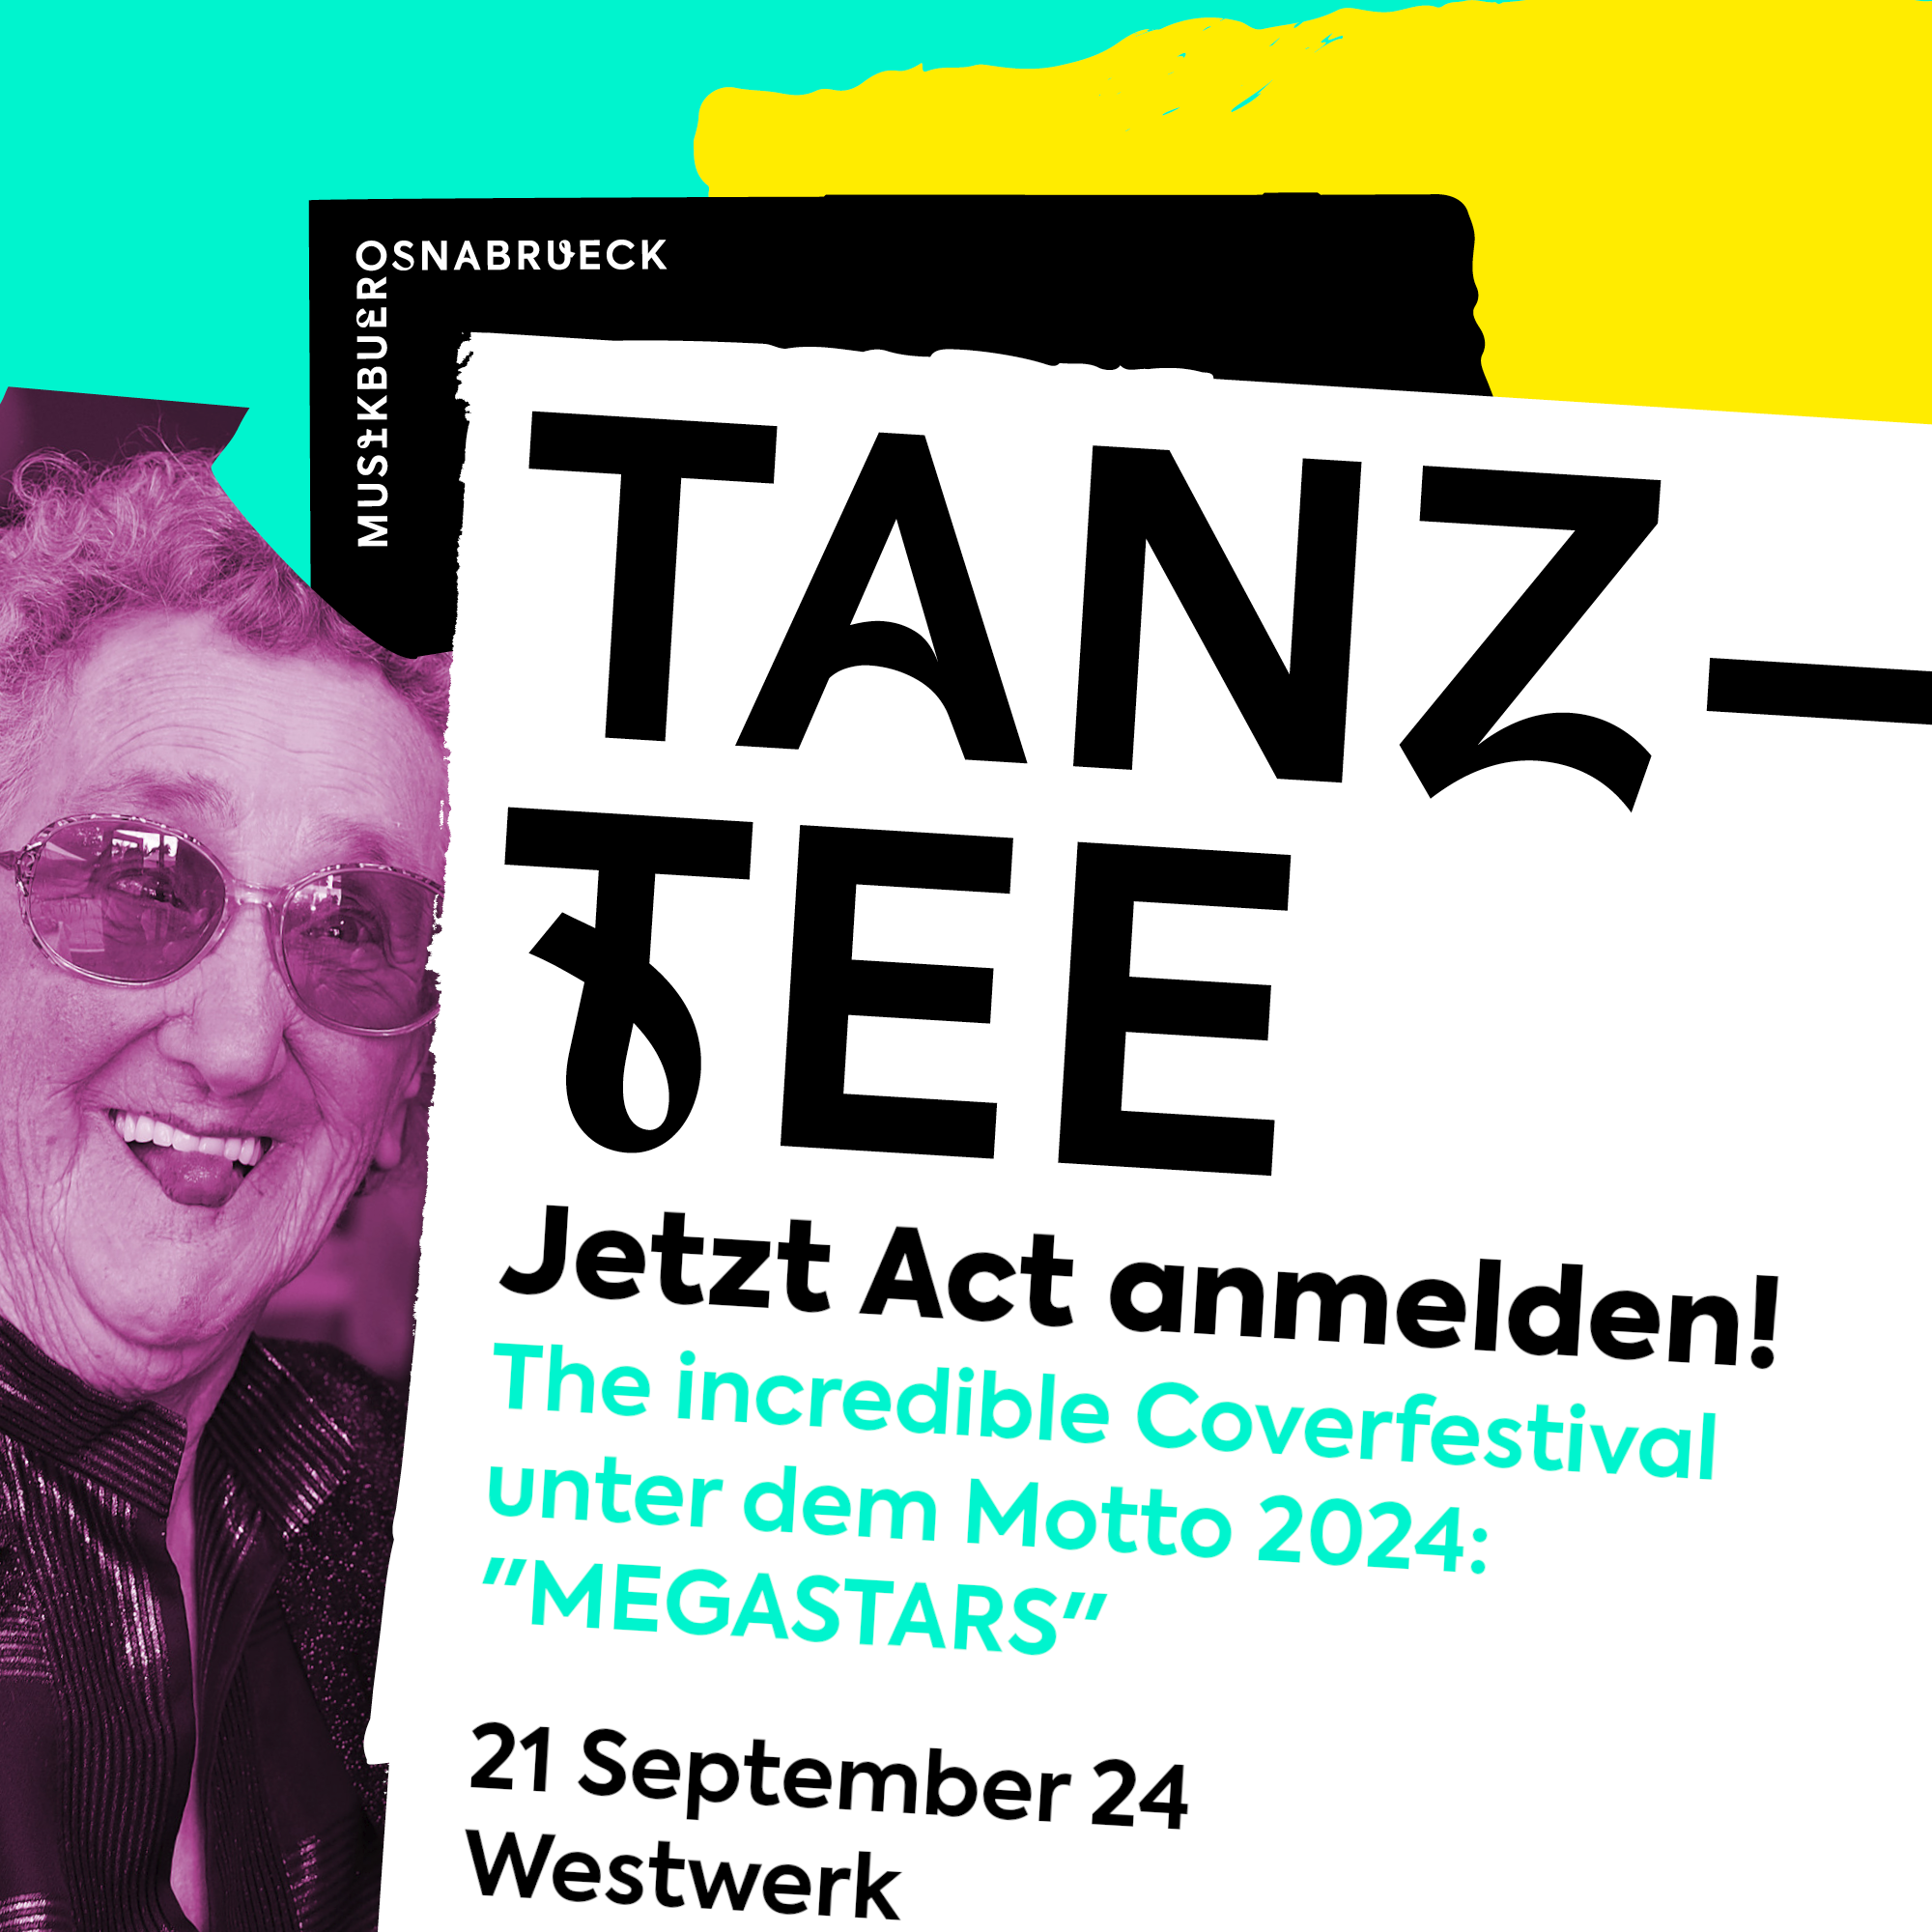 Tanztee - jetzt Act anmelden! The incredible Coverfestival unter dem Motto 2024: "MEGASTARS" - 21.09.2024 Westwerk Osnabrück